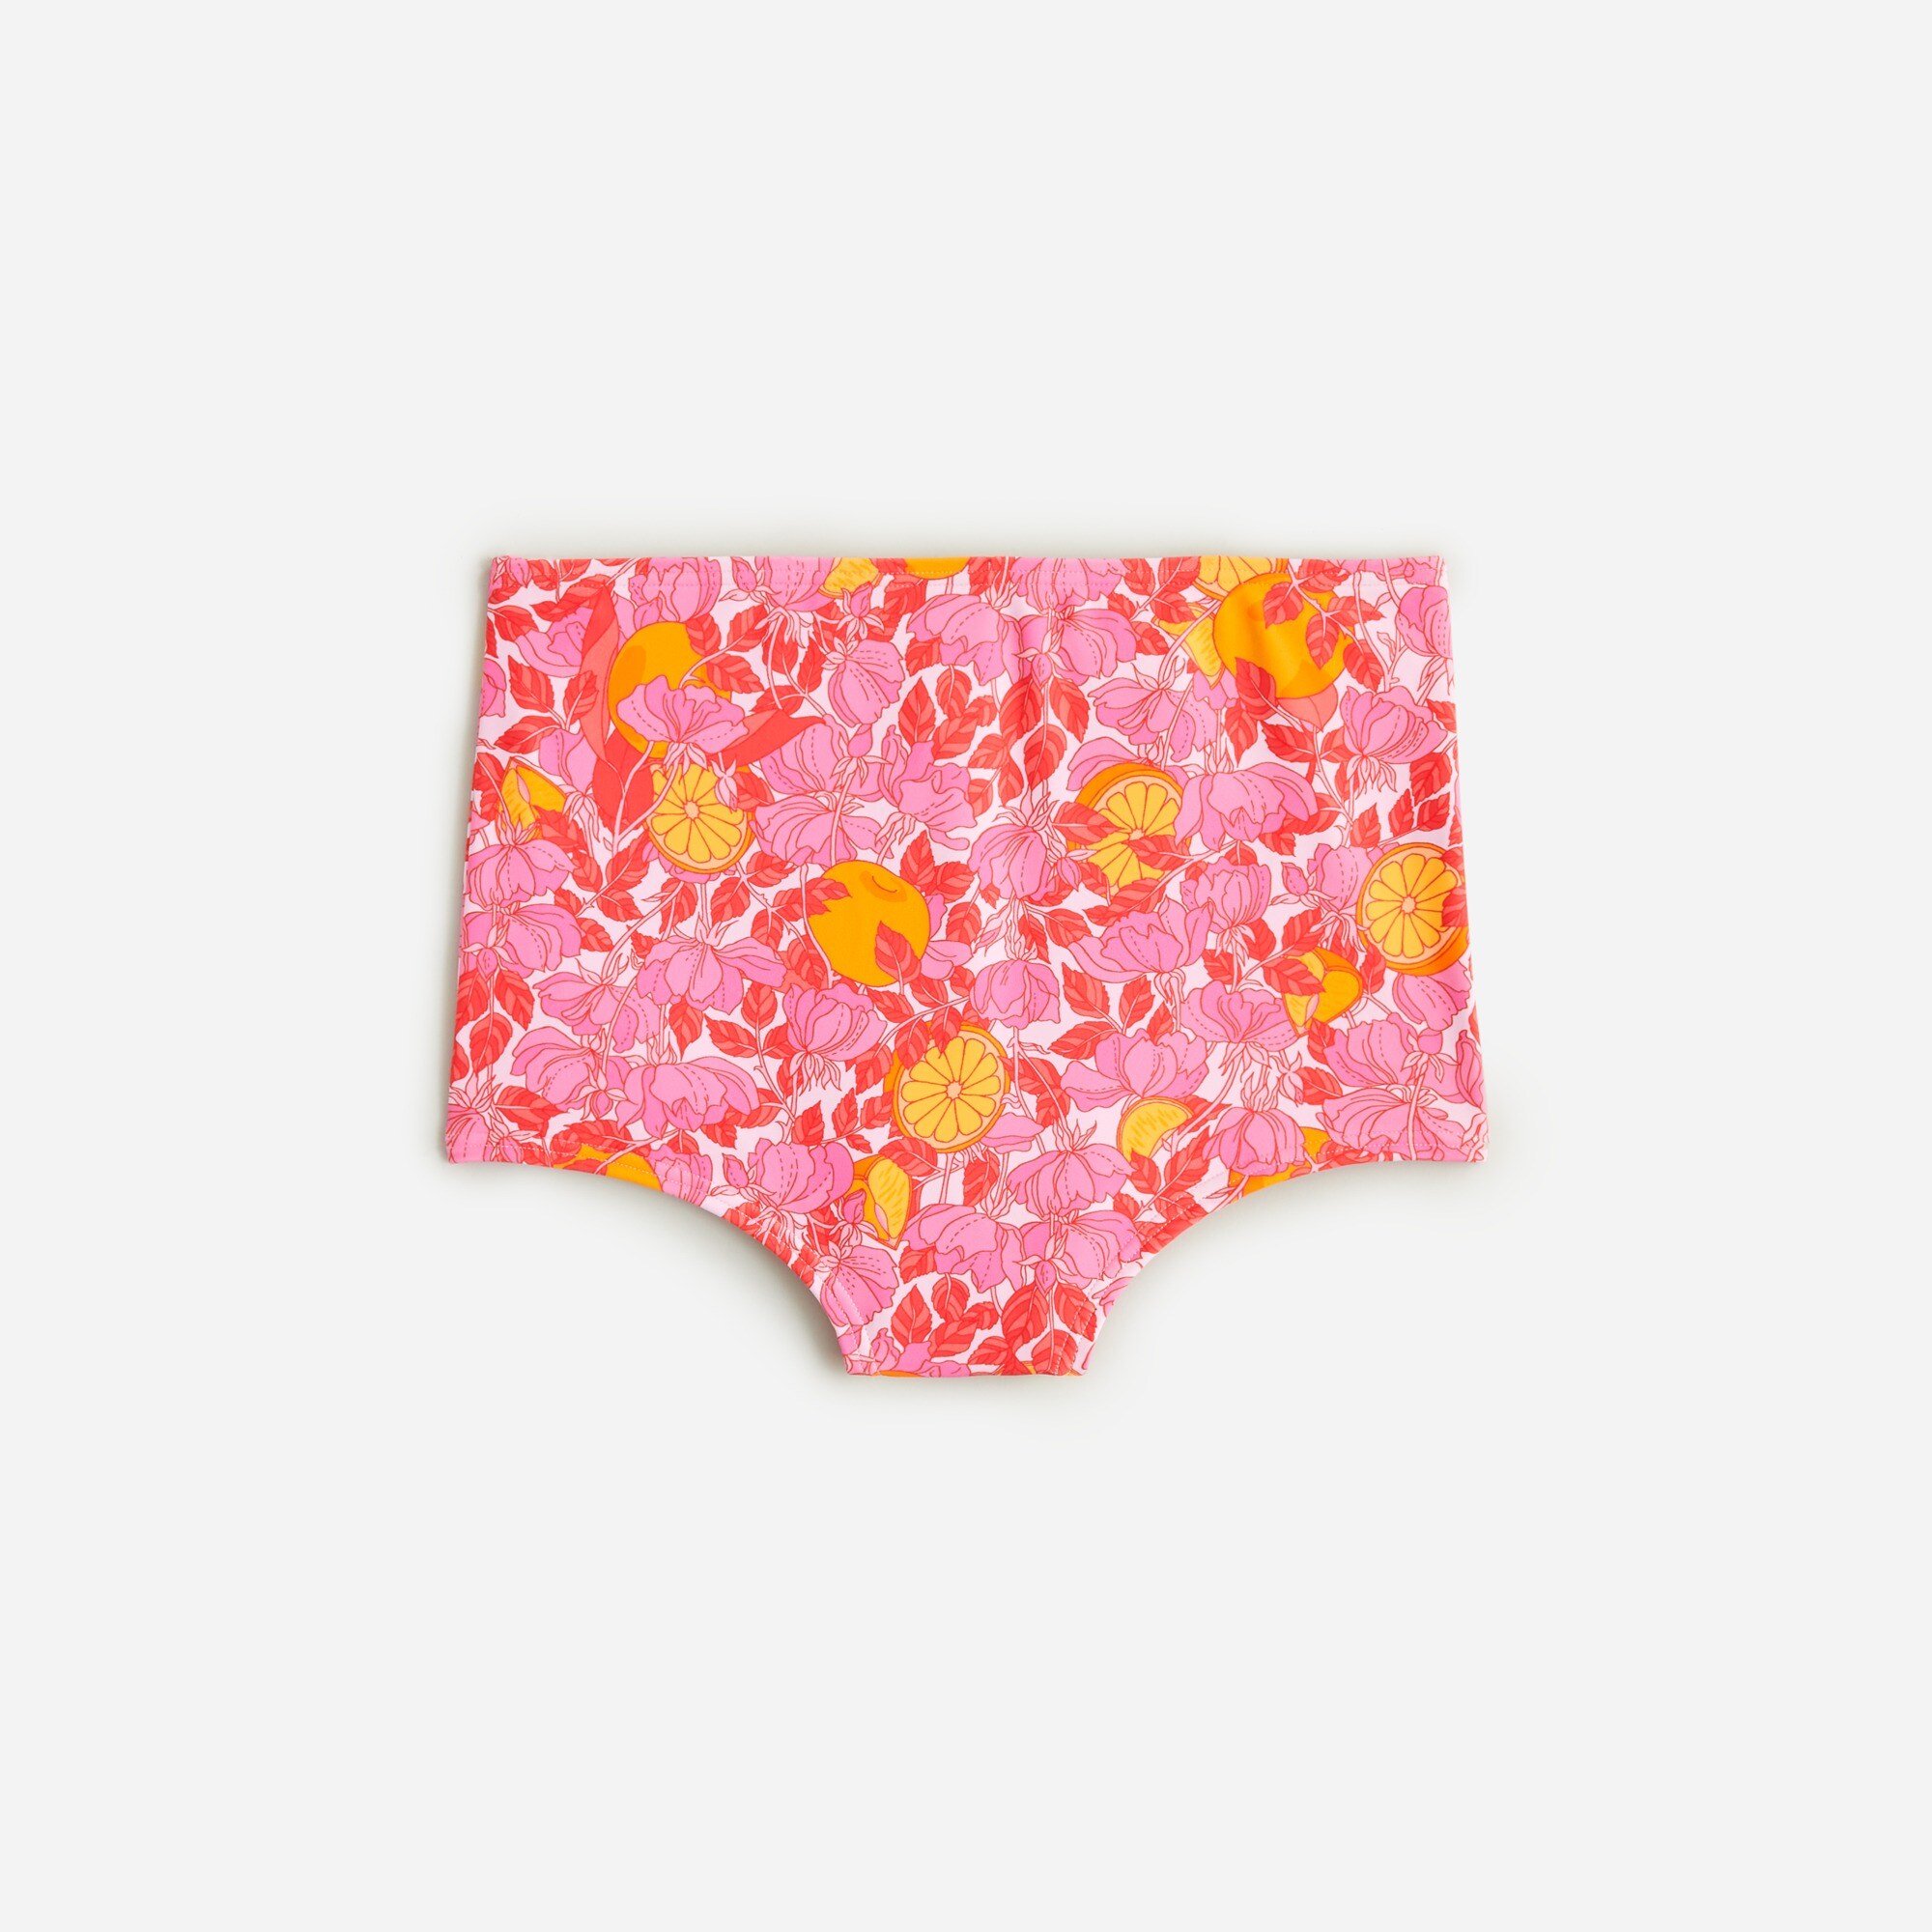  High-rise full-coverage bikini bottom in pink limone print